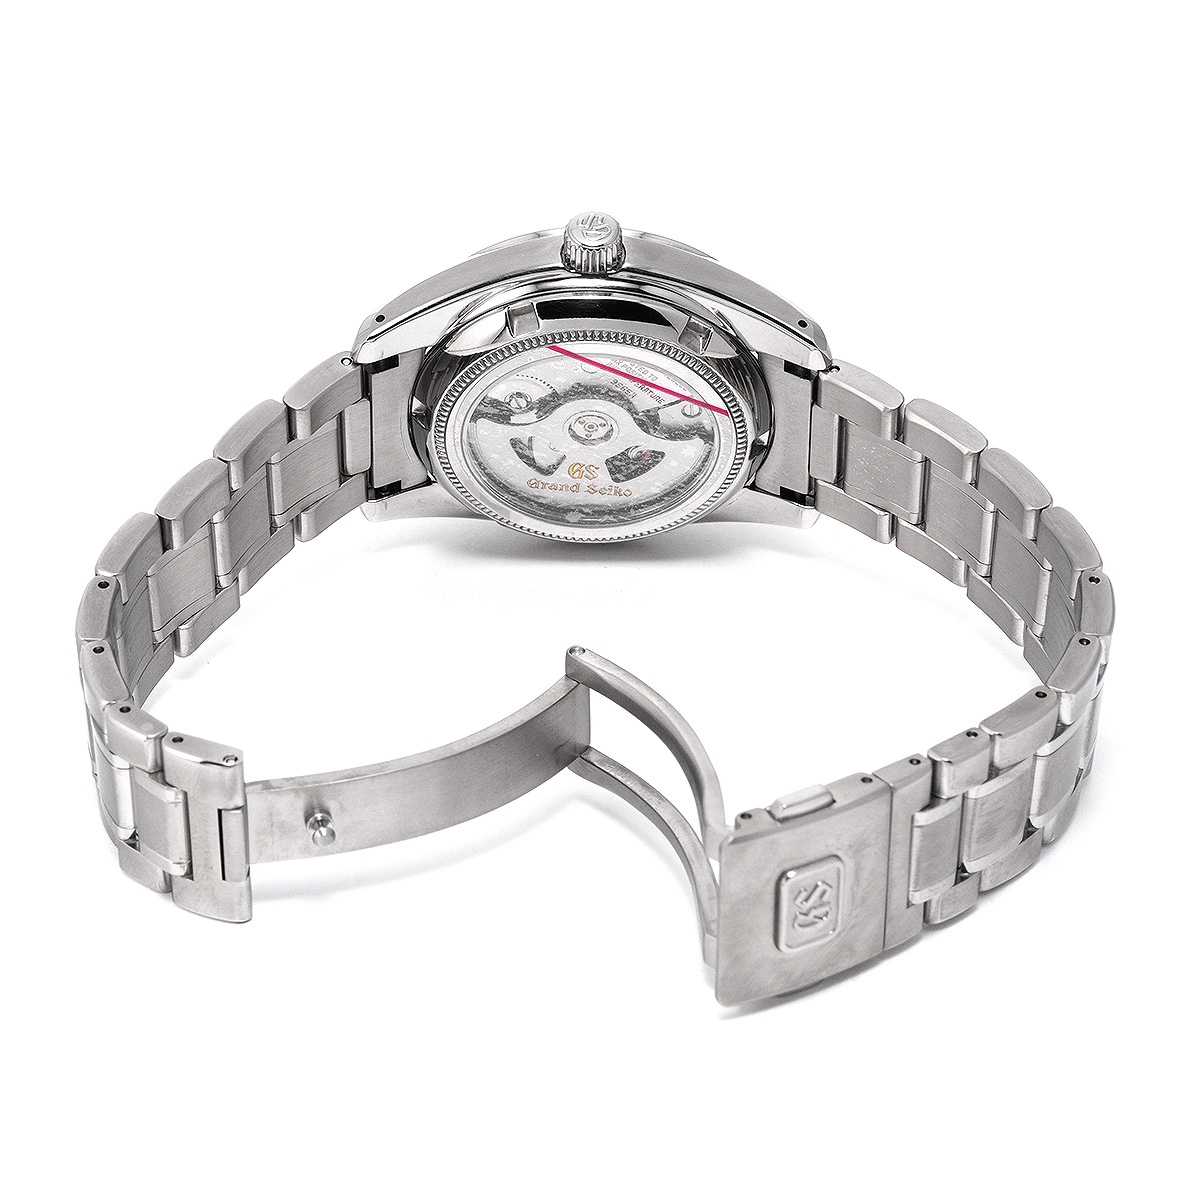 グランドセイコー Grand Seiko SBGR059 シルバー メンズ 腕時計